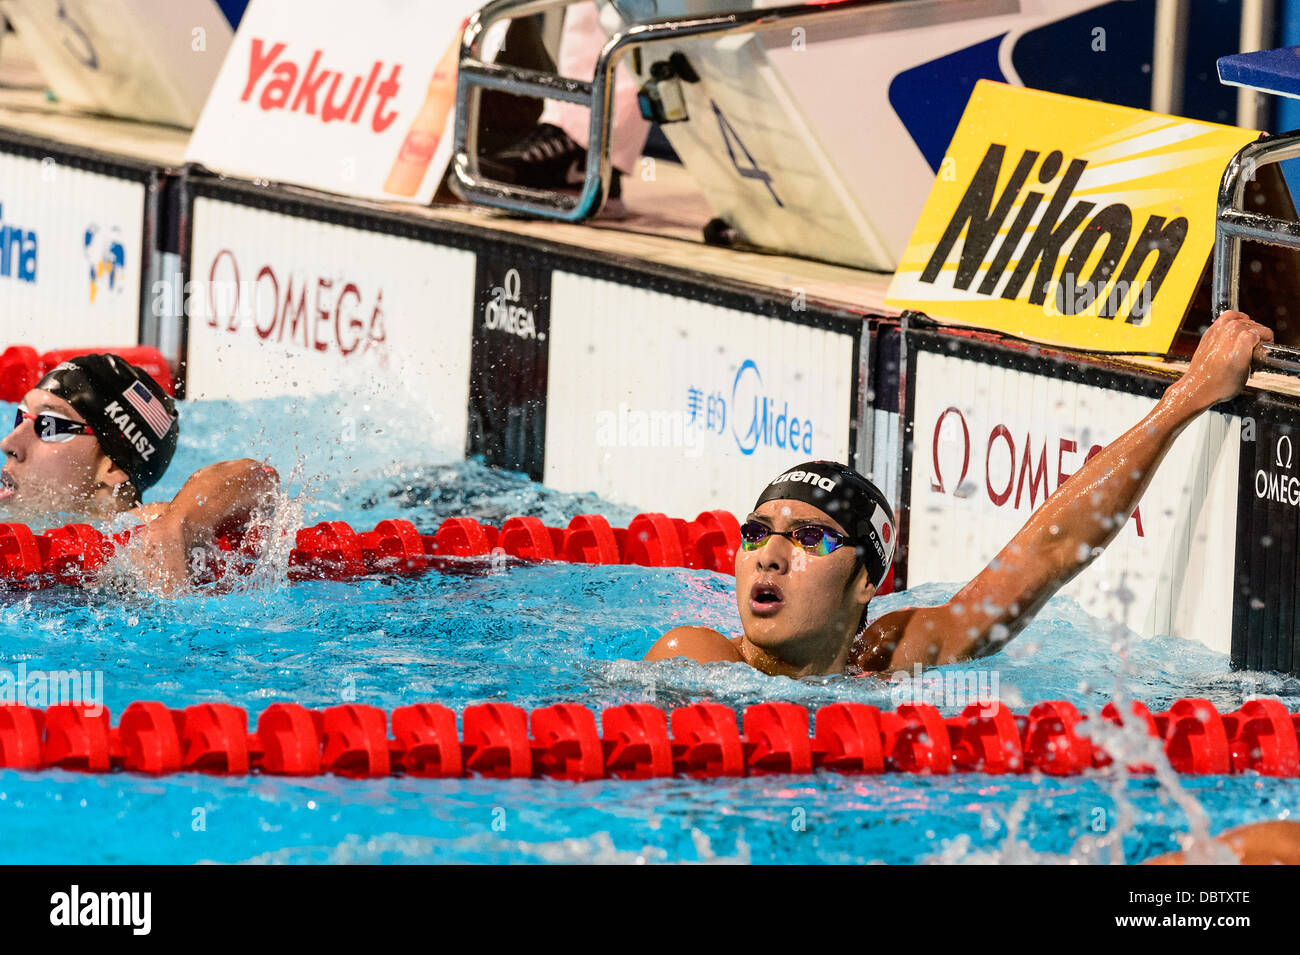 Barcelone, Espagne. Août 4th, 2013 : le Japon Seto Daiya vérifie les résultats de sélection après le men's 400m quatre nages individuel à la 15e finale des Championnats du Monde FINA à Barcelone. Credit : matthi/Alamy Live News Banque D'Images